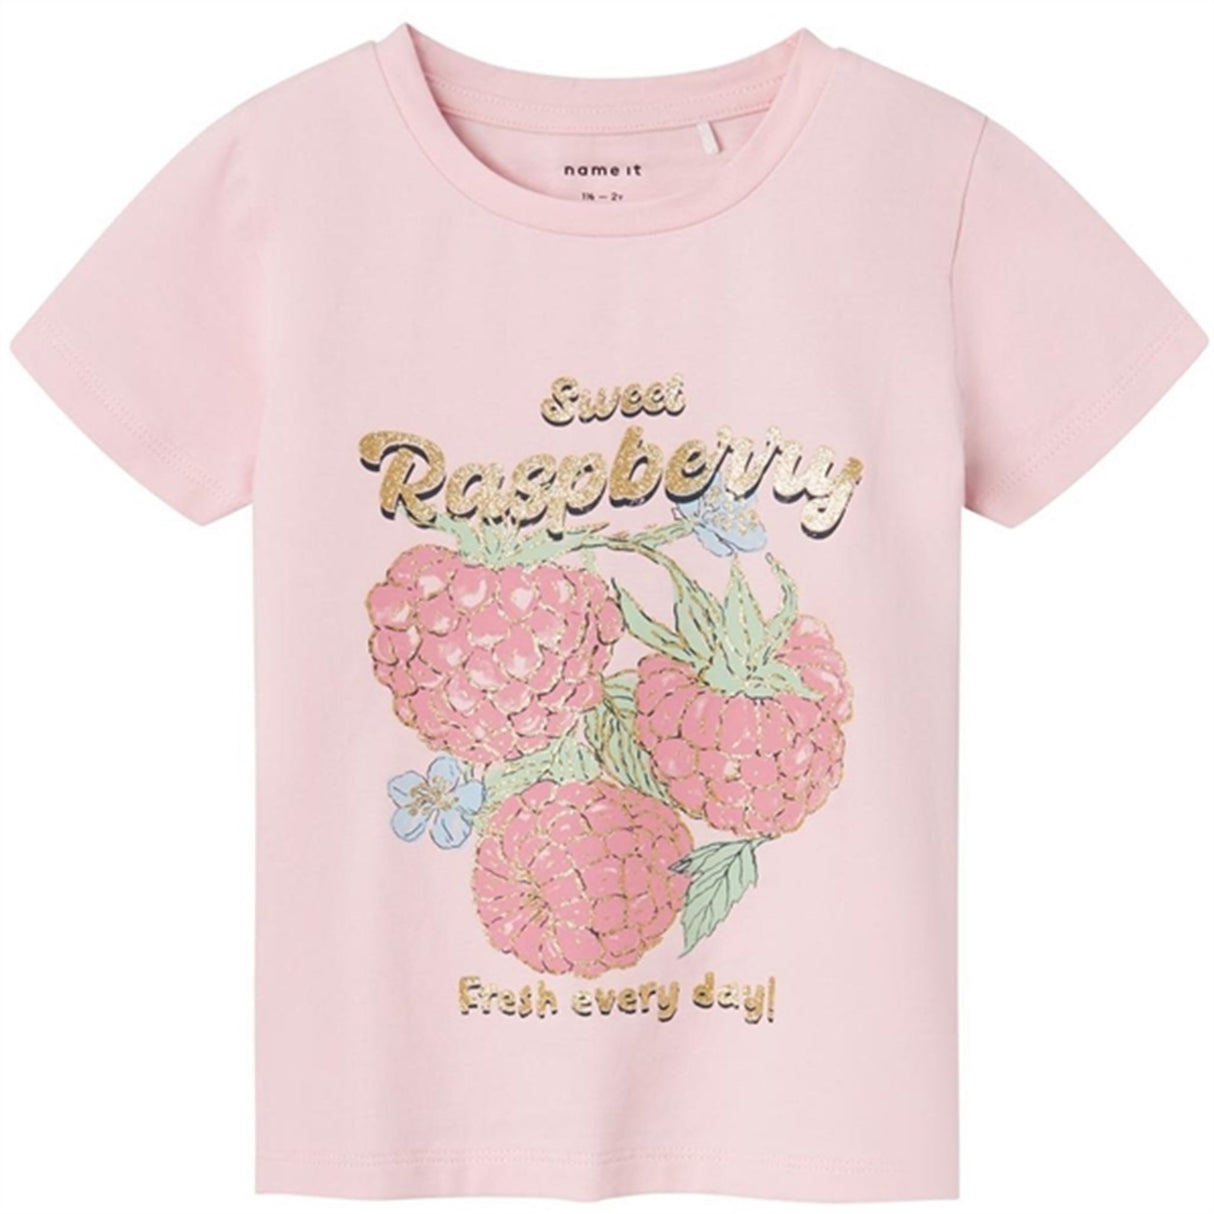 Name it Parfait Pink Diaz T-Shirt